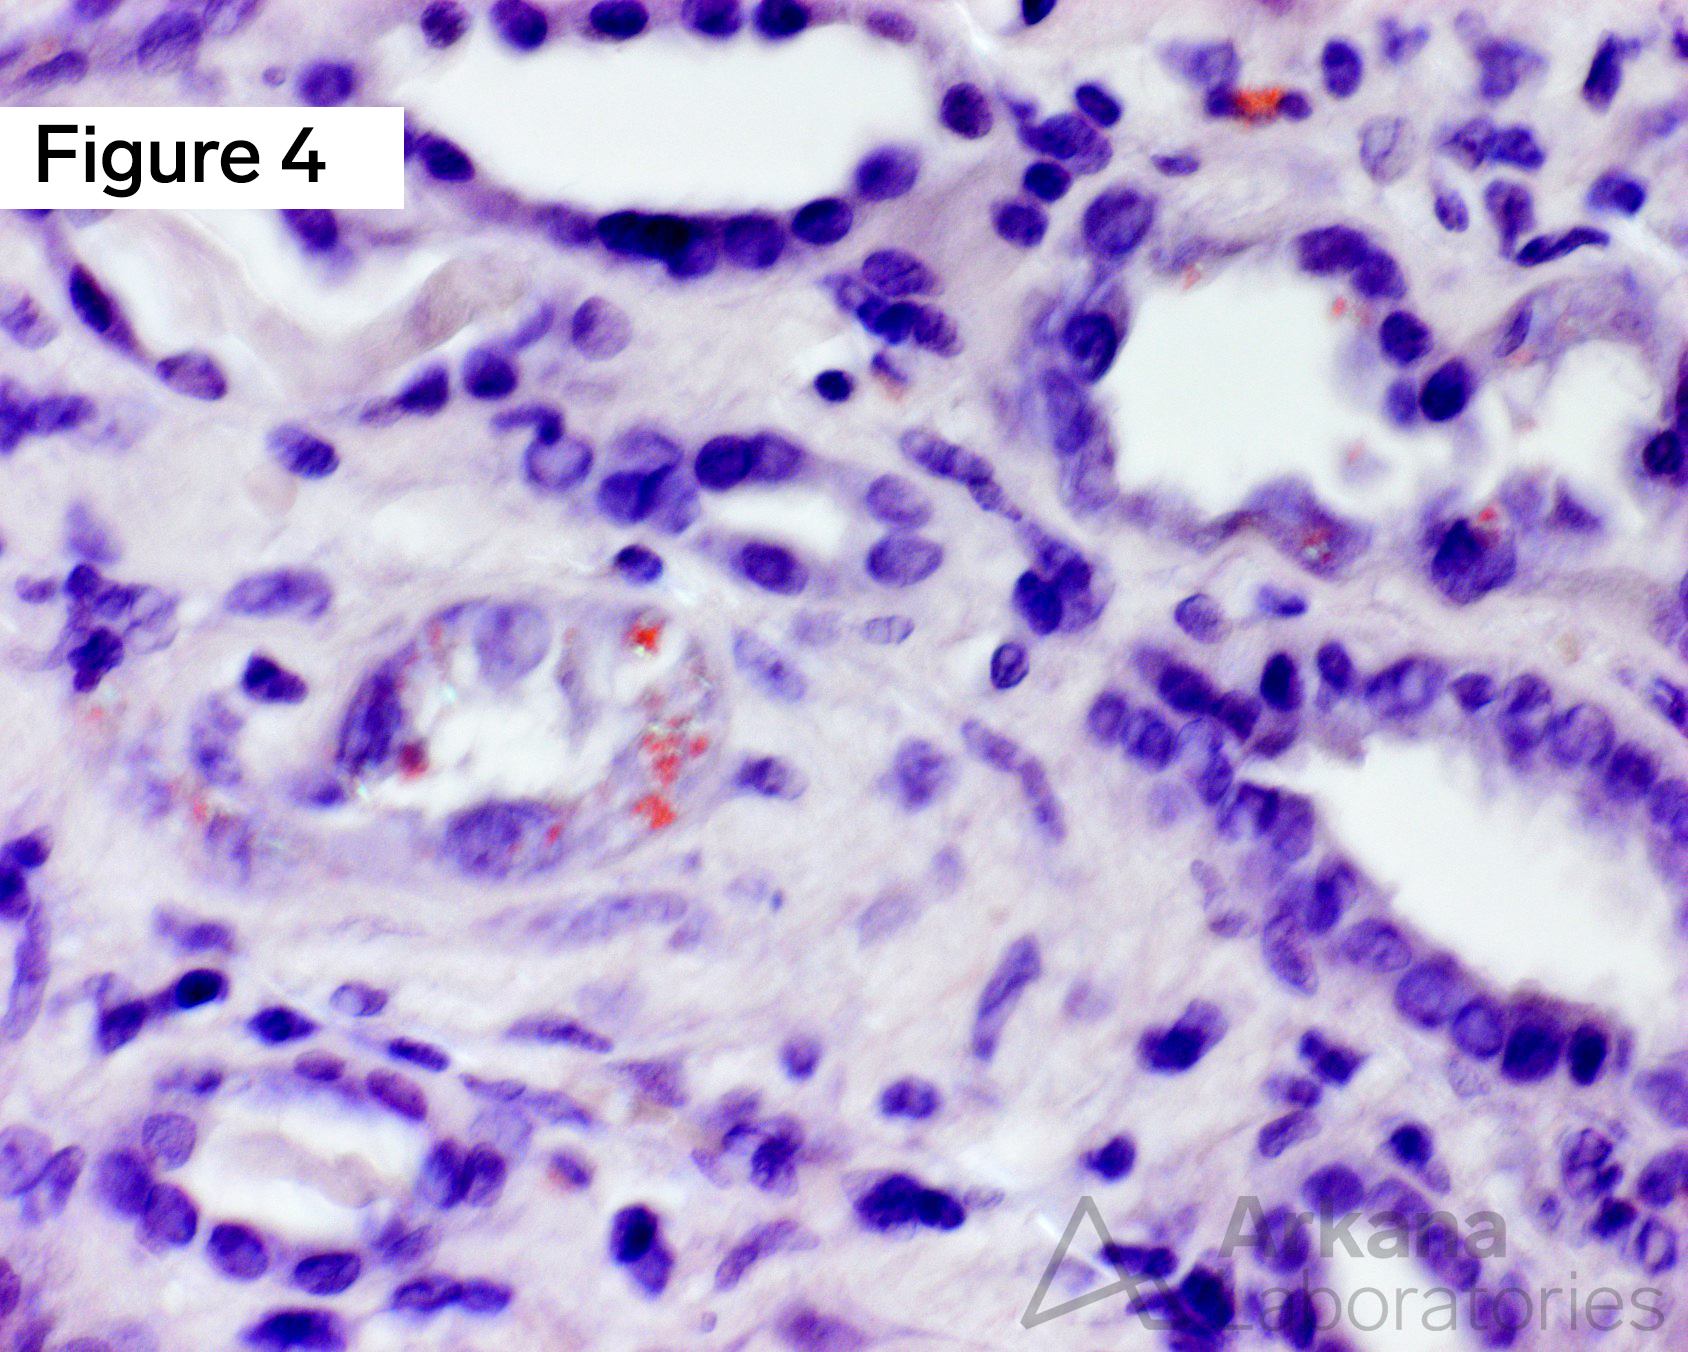 congophilic tubular epithelial inclusions polarized, Amyloid Proximal Tubulopathy